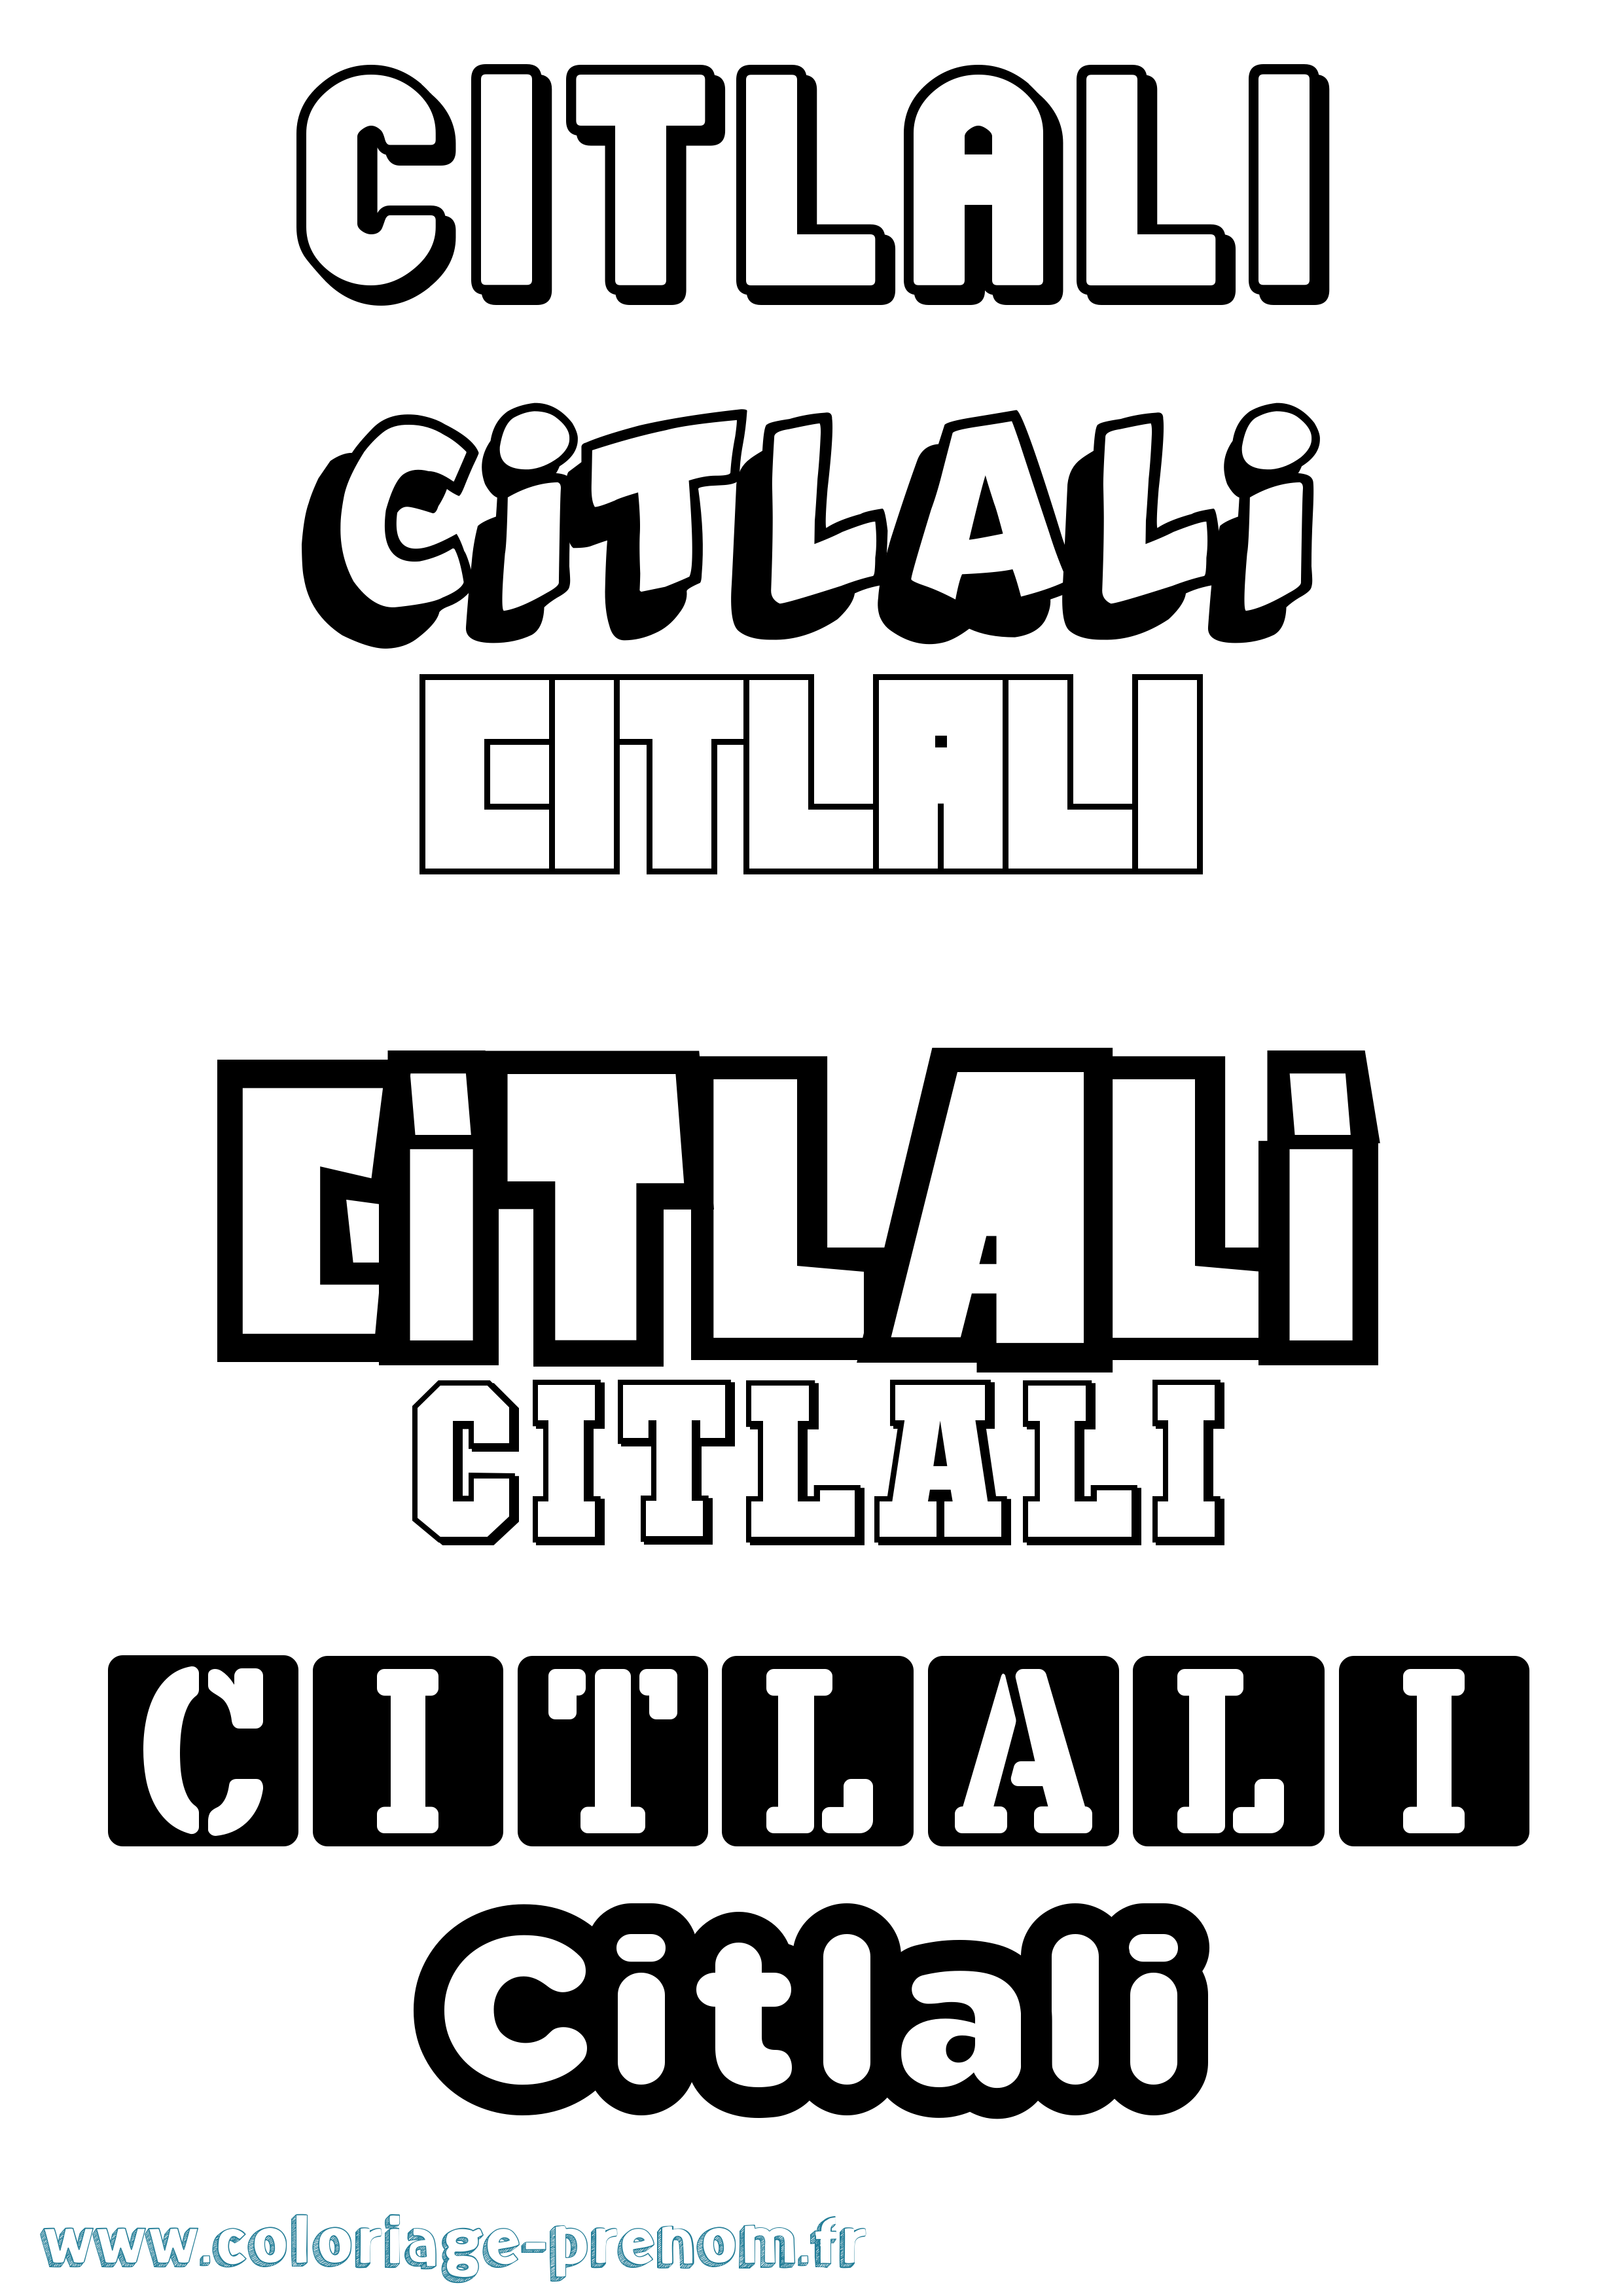 Coloriage prénom Citlali Simple